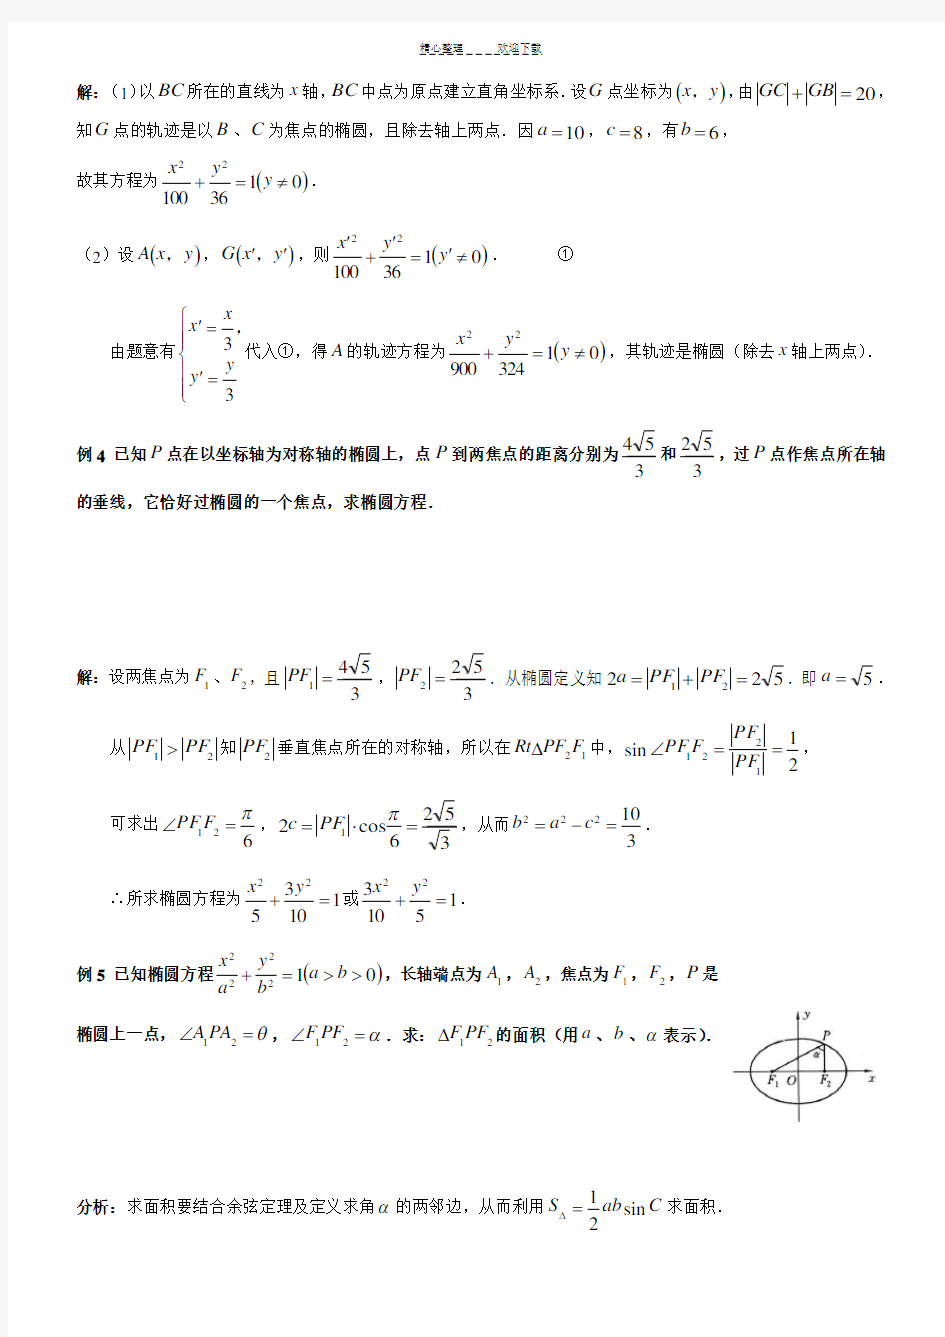 椭圆标准方程典型例题